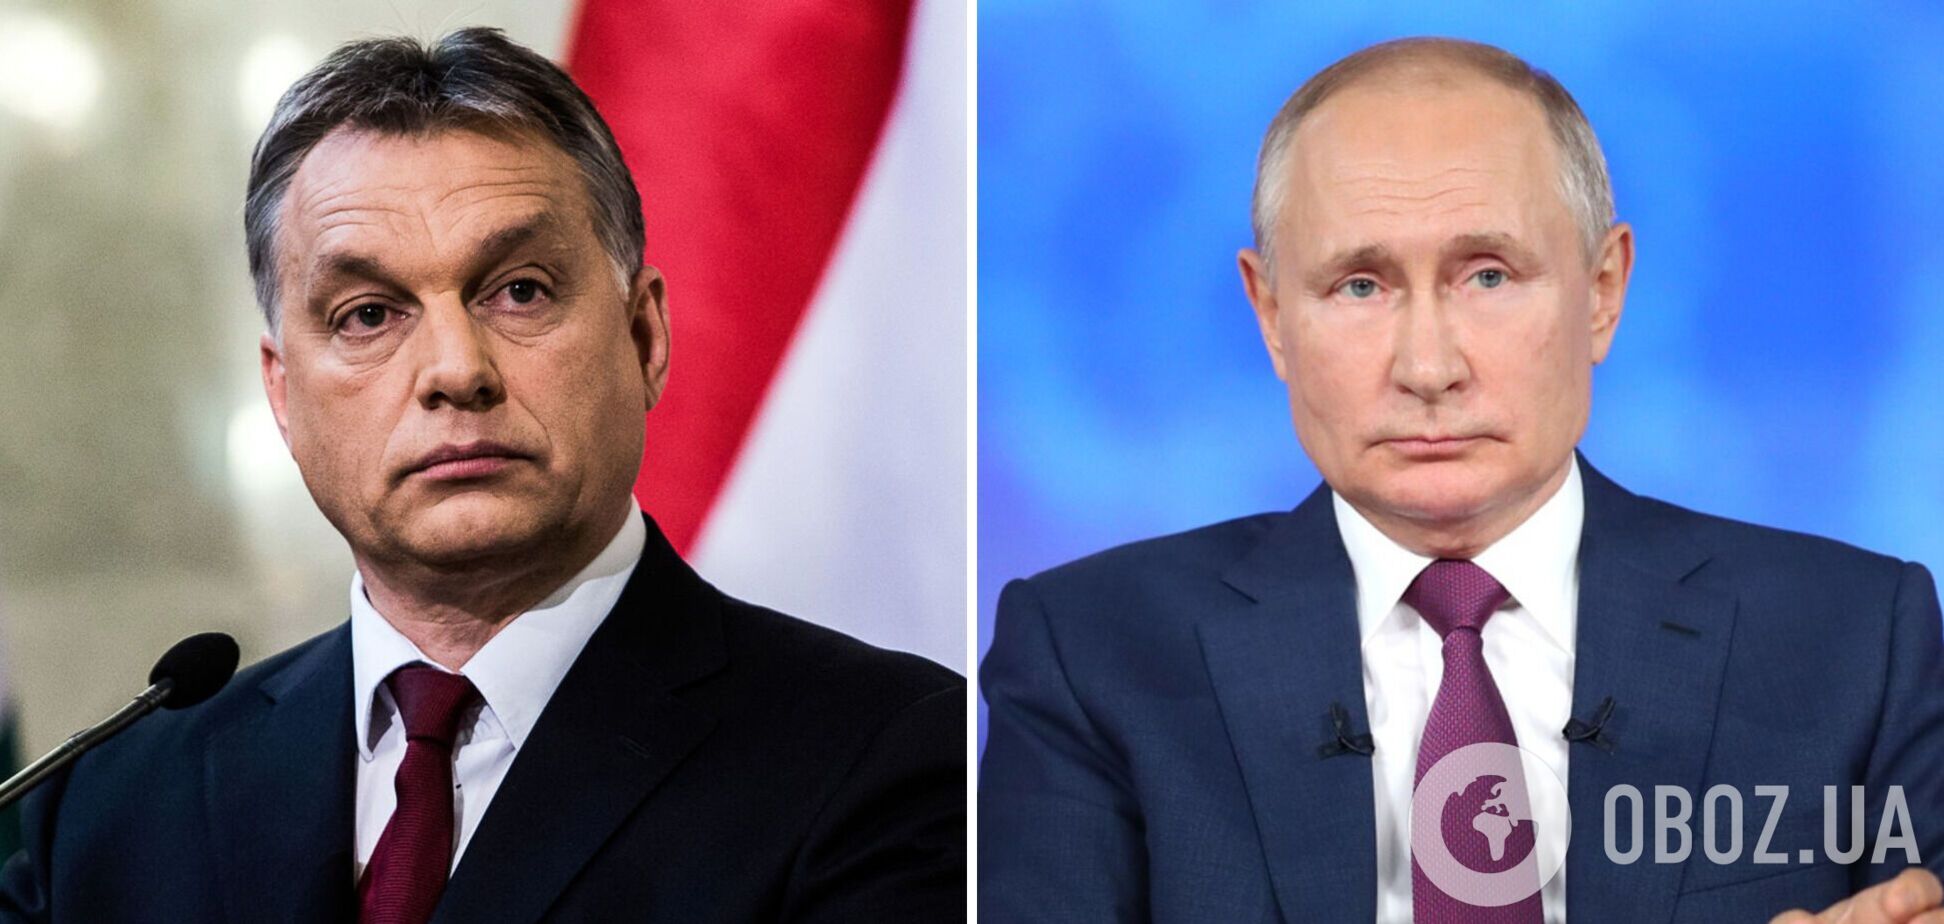 Орбан сравнил санкции против России с атомной бомбой и заявил, что Венгрия не присоединится к ним